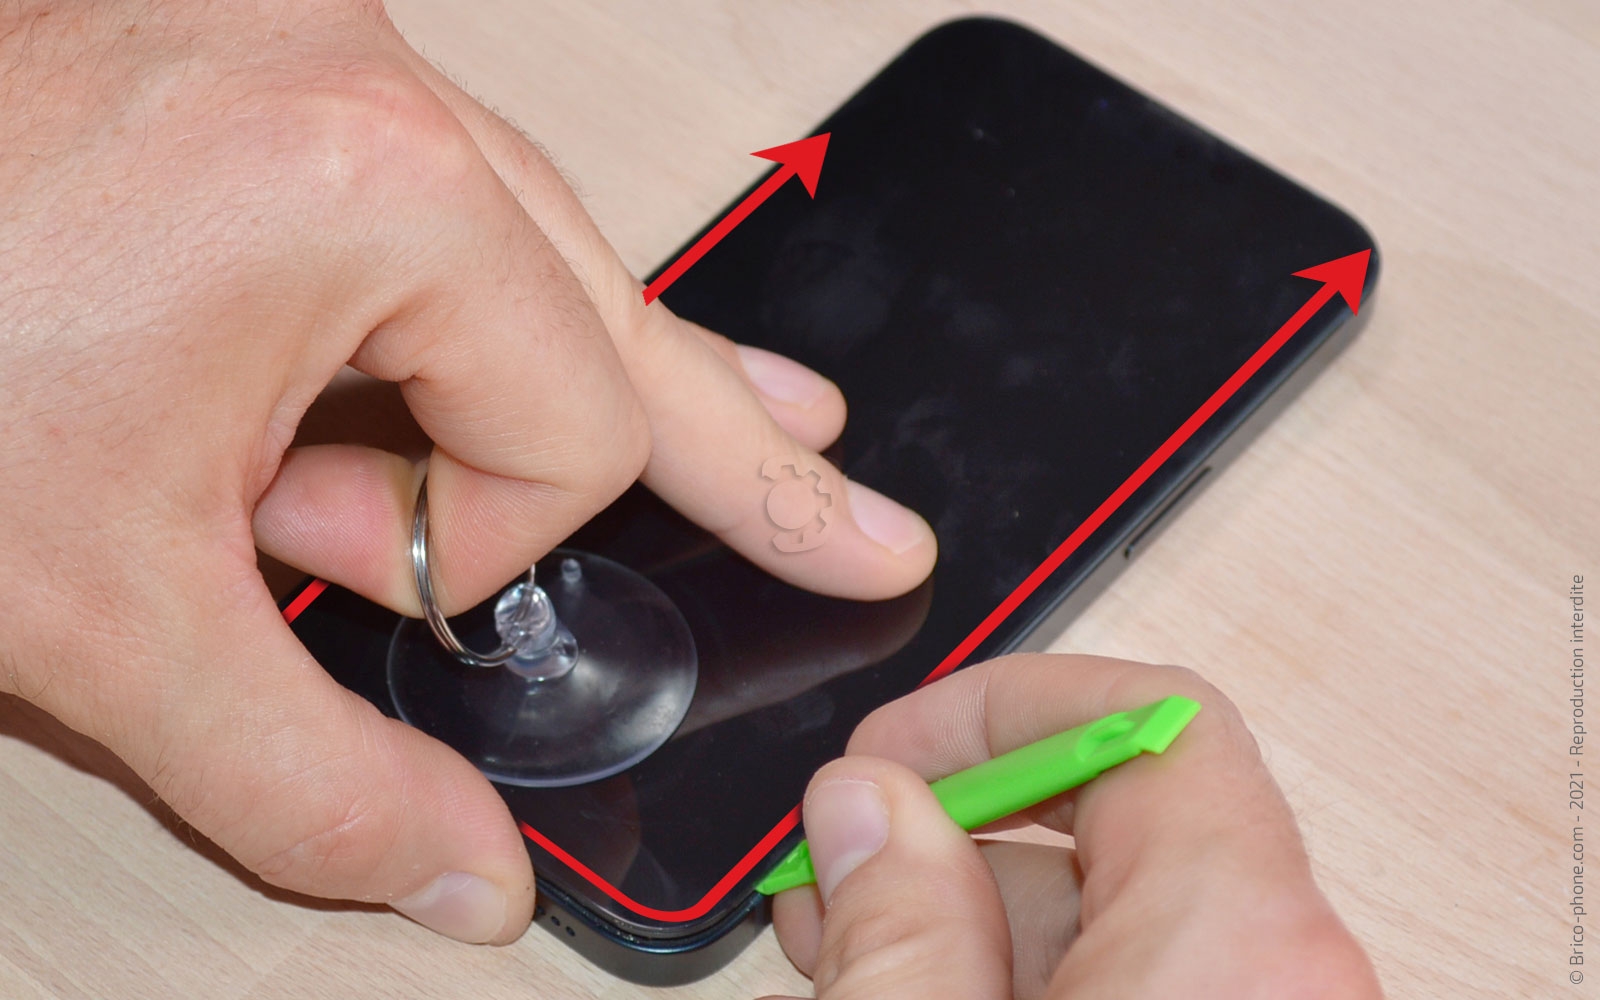 Comment remplacer la batterie de l'iPhone SE 2020 ? La solution avec ce  tutoriel Brico-Phone. 